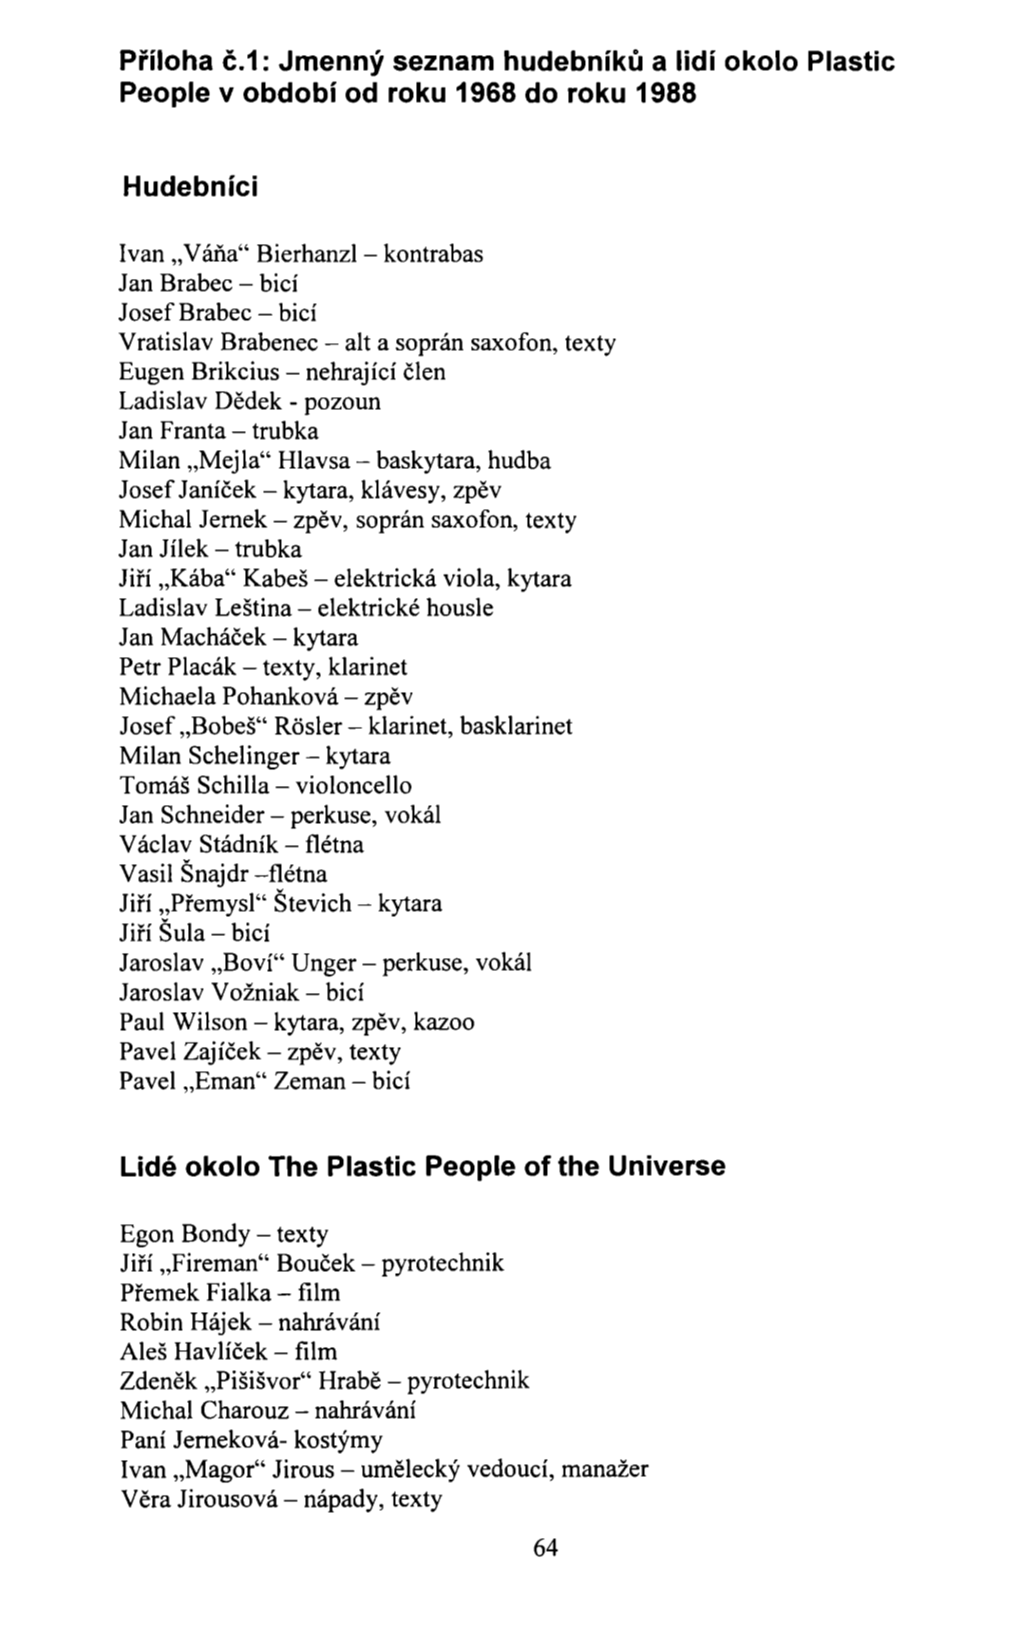 Příloha Č.1: Jmenný Seznam Hudebníků a Lidí Okolo Plastic People V Období Od Roku 1968 Do Roku 1988 Hudebníci Lidé